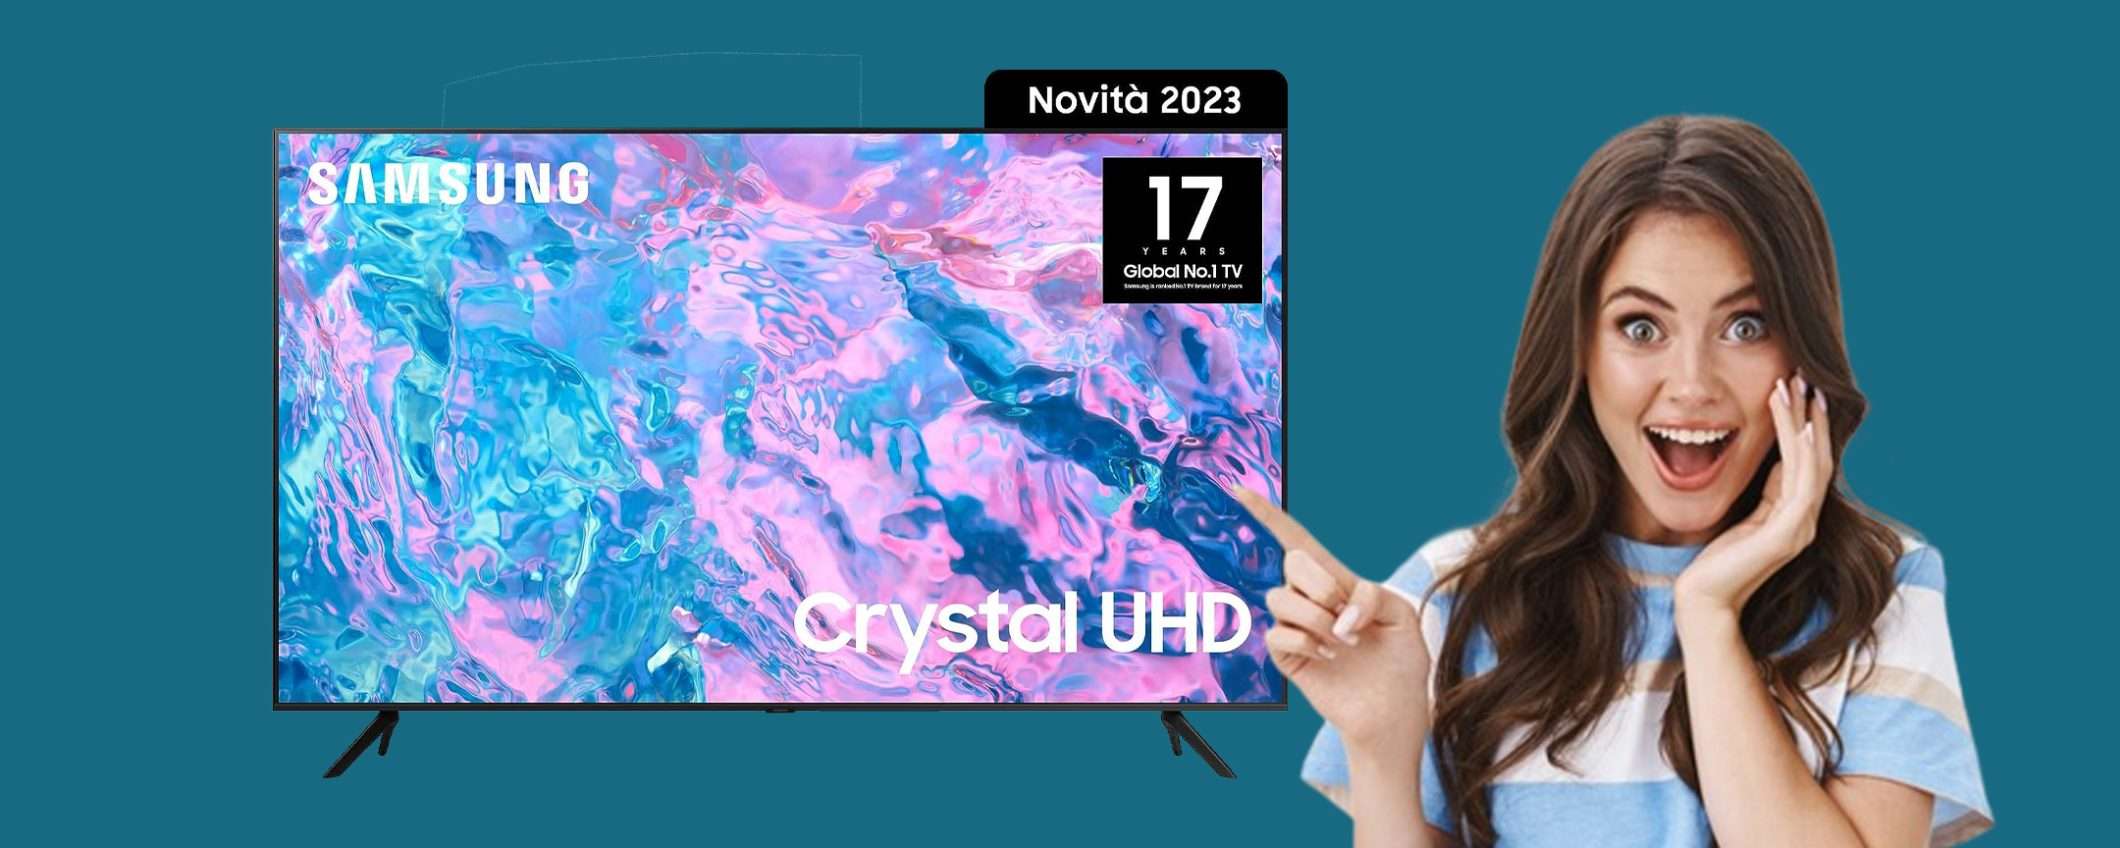 Smart TV Crystal UHD Samsung 4K da 55